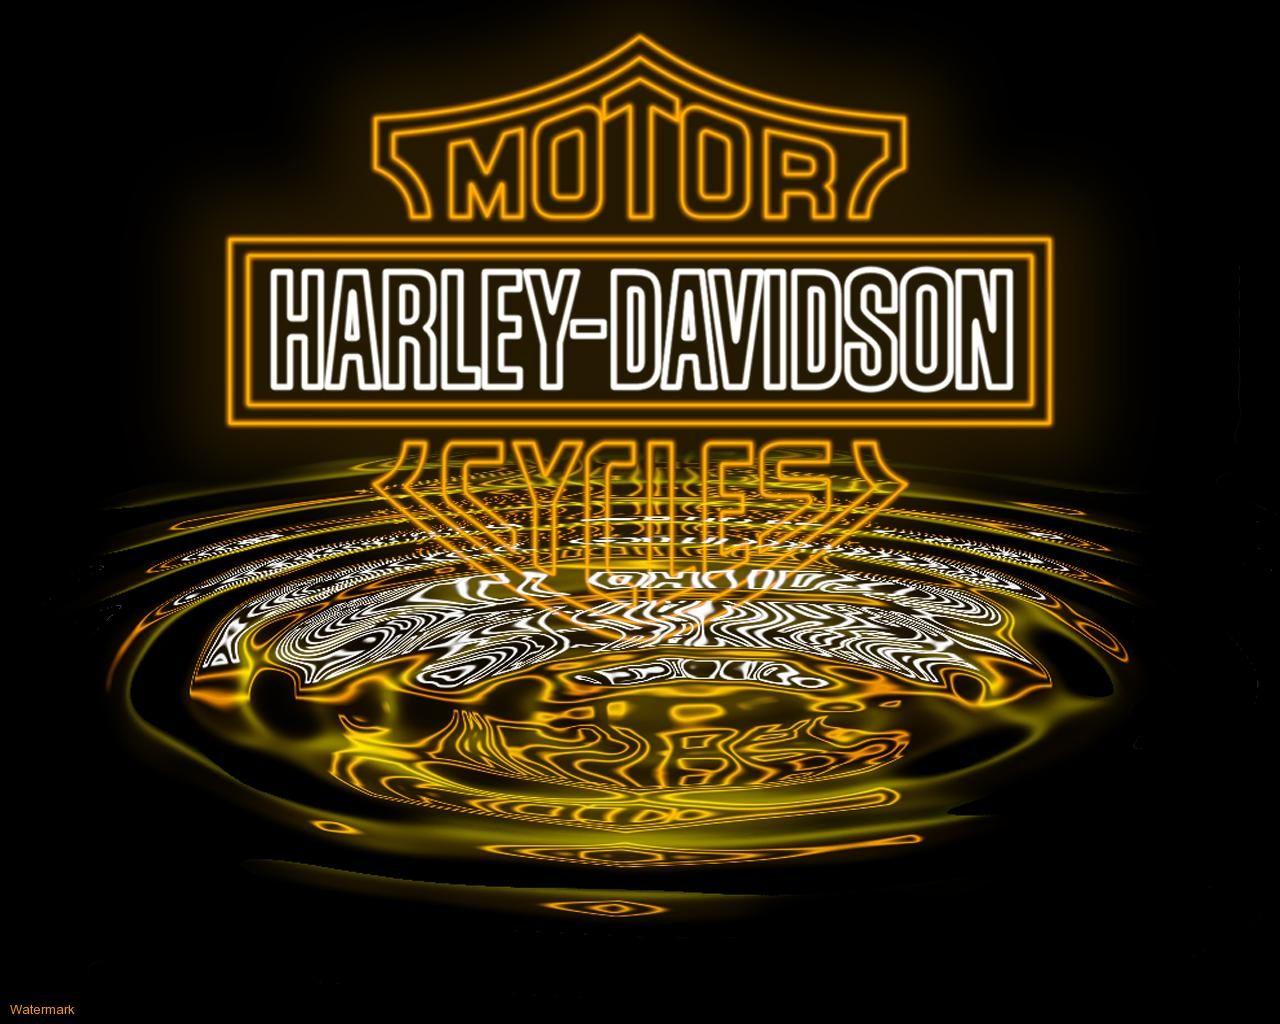 picture of harley davidson logos. Harley Davidson Logo Wallpaper